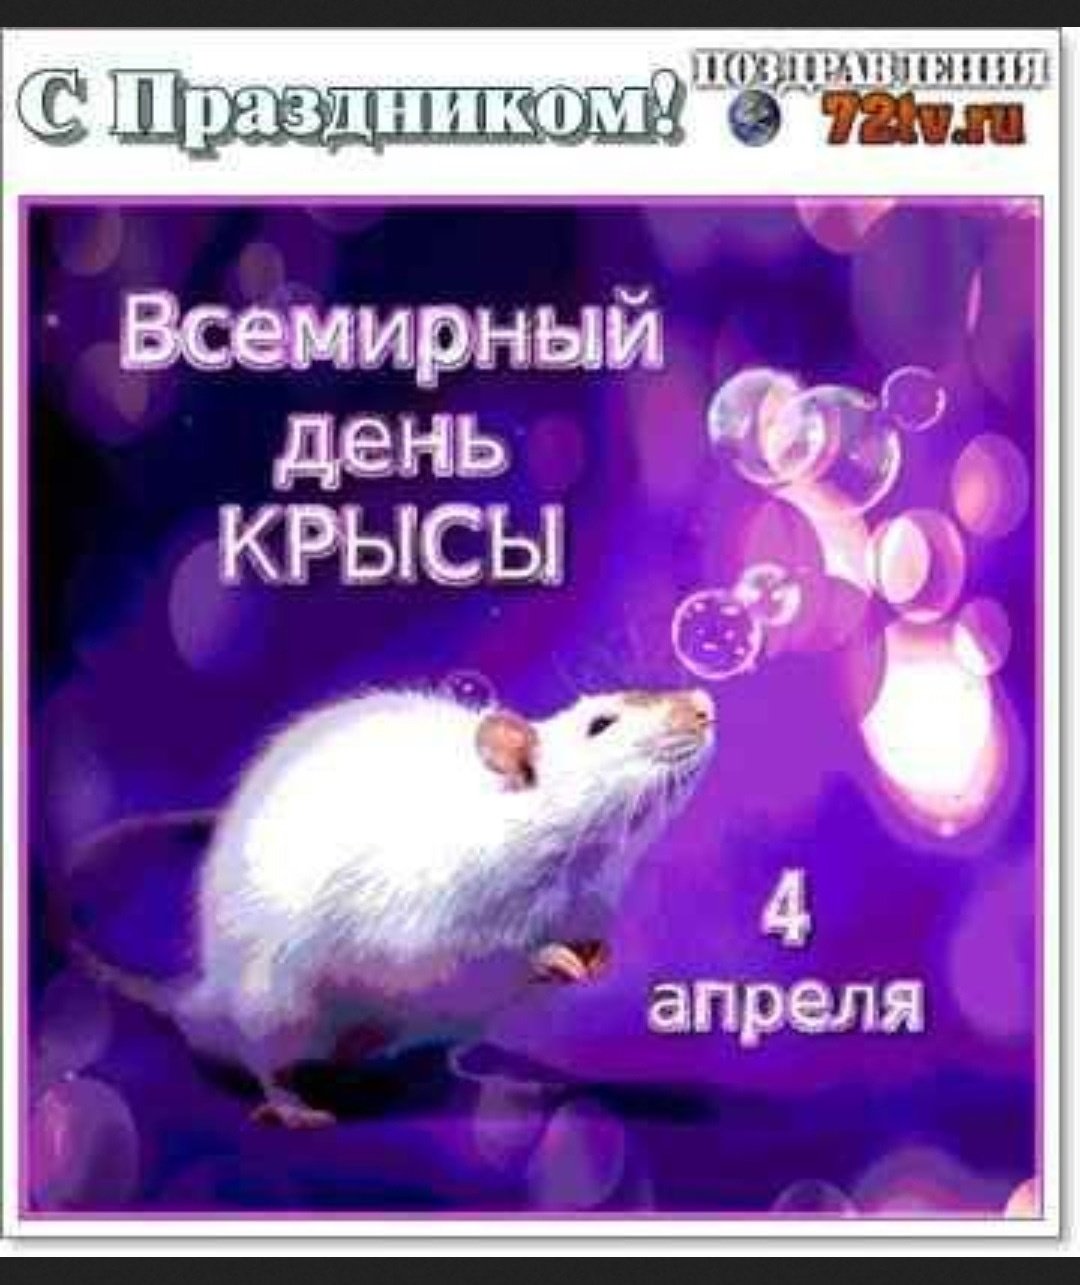 Всемирный день крысы. Всемирный день крысы 4 апреля. Всемирный день крысы открытки. 4 Апреля праздник день крысы. День крысы 4 апреля картинки